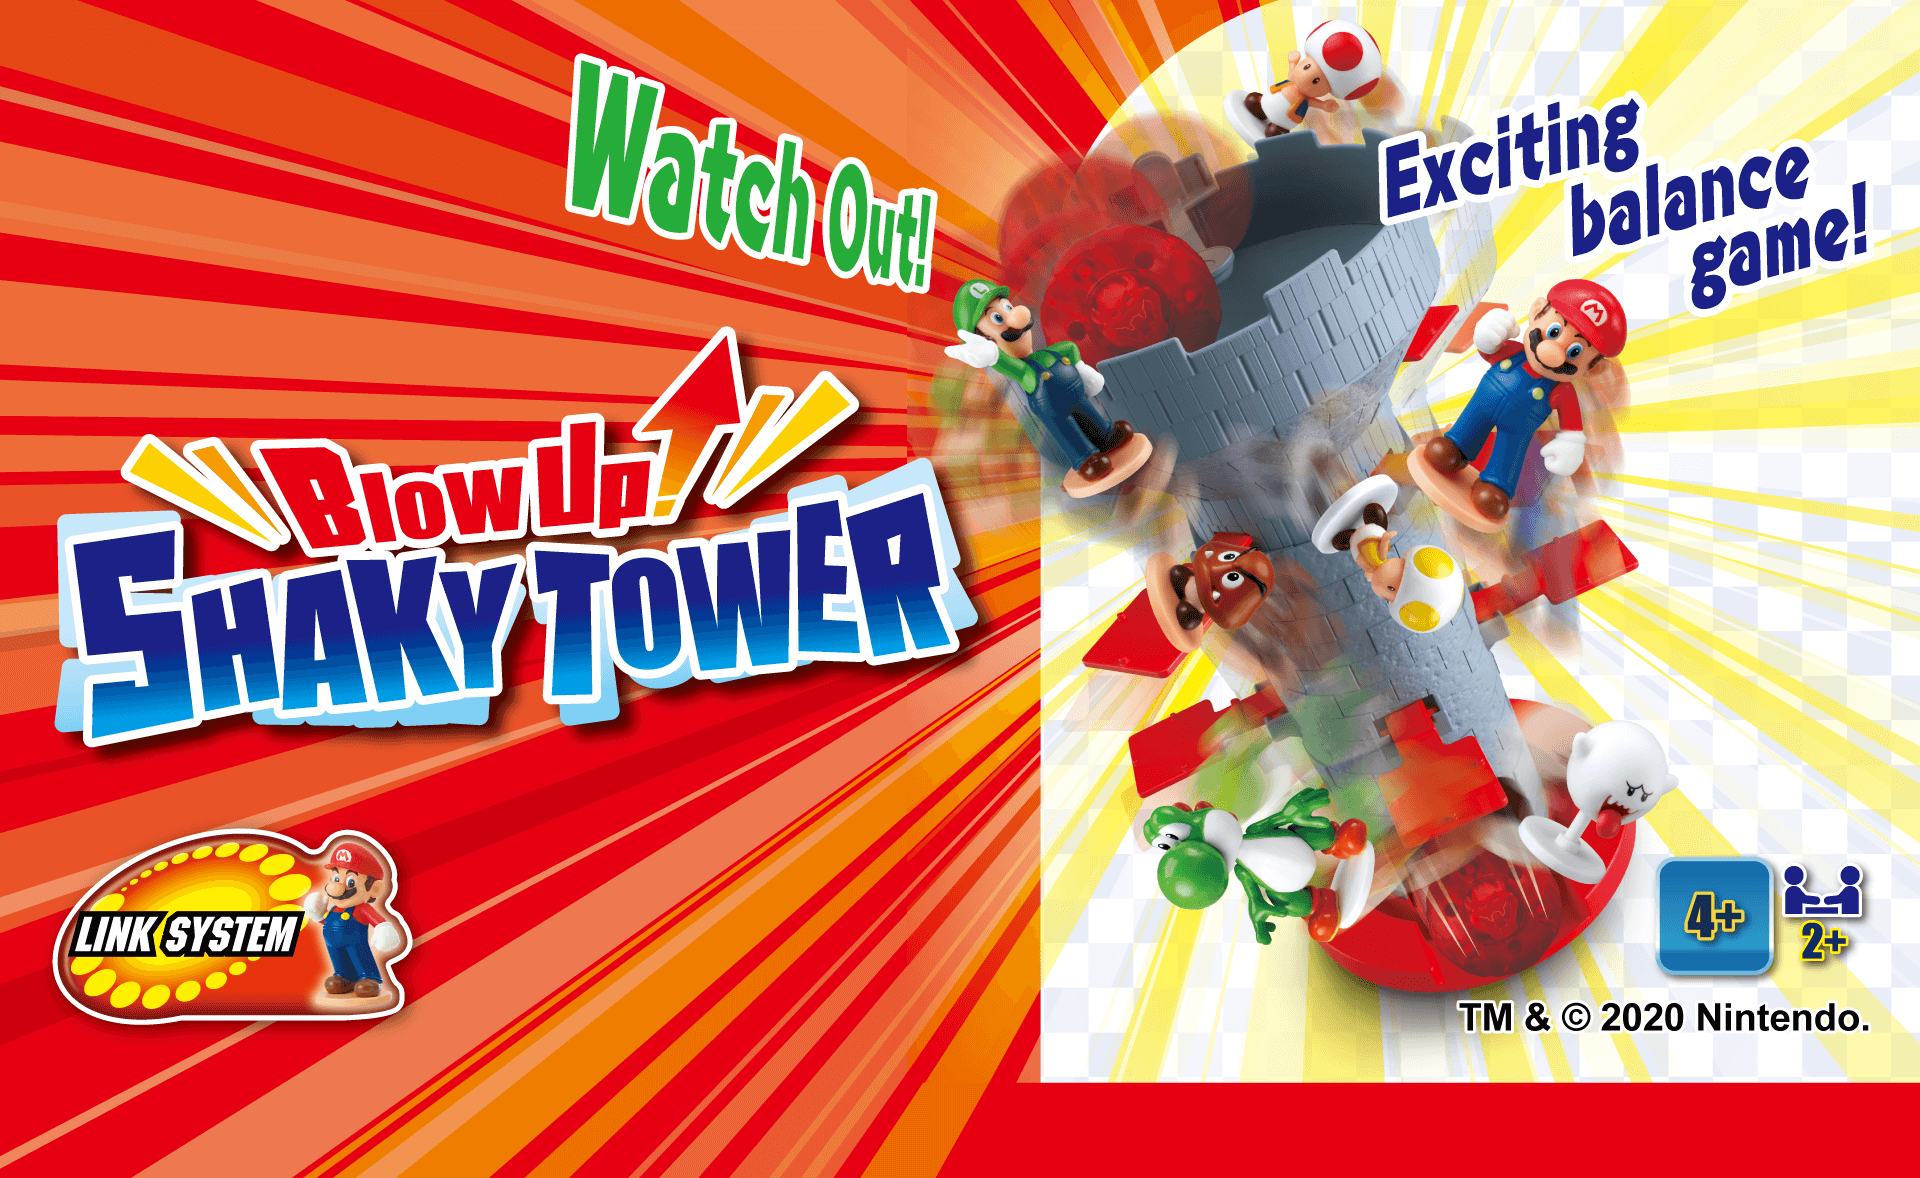 Super Mario™ - Blow up! Shaky Tower